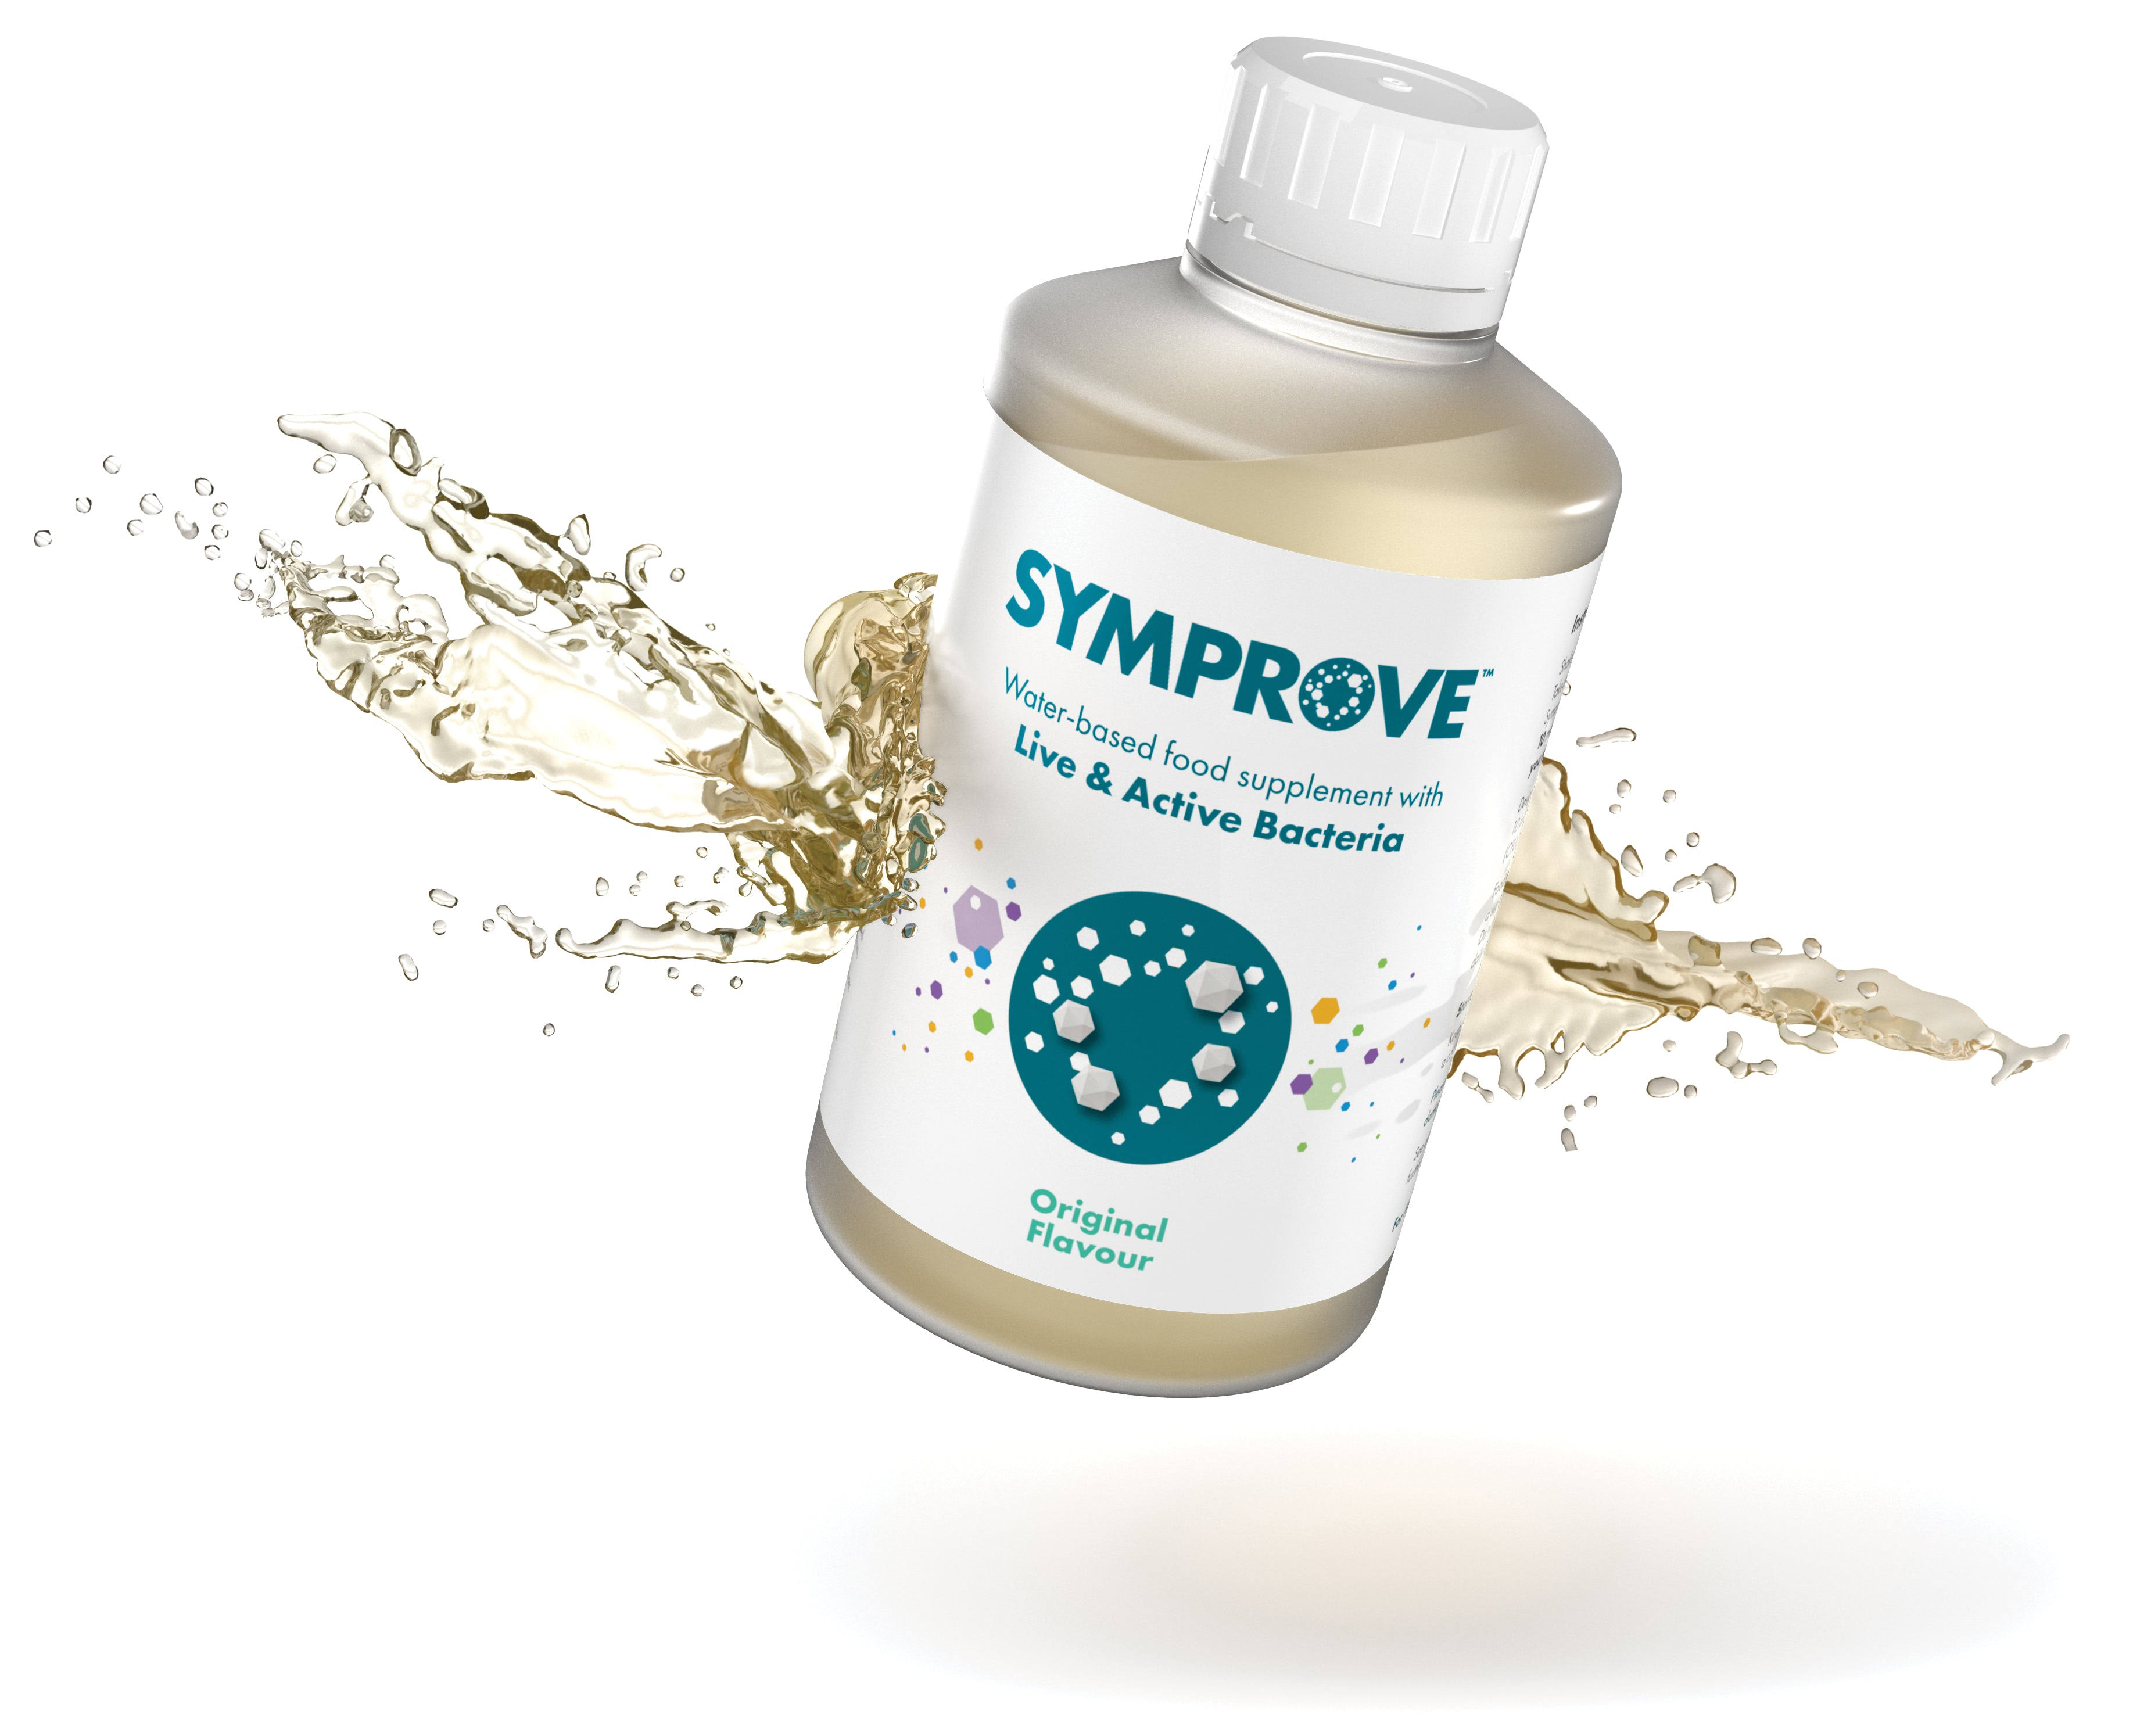 Symprove Probiotic Original Flavour 500ml